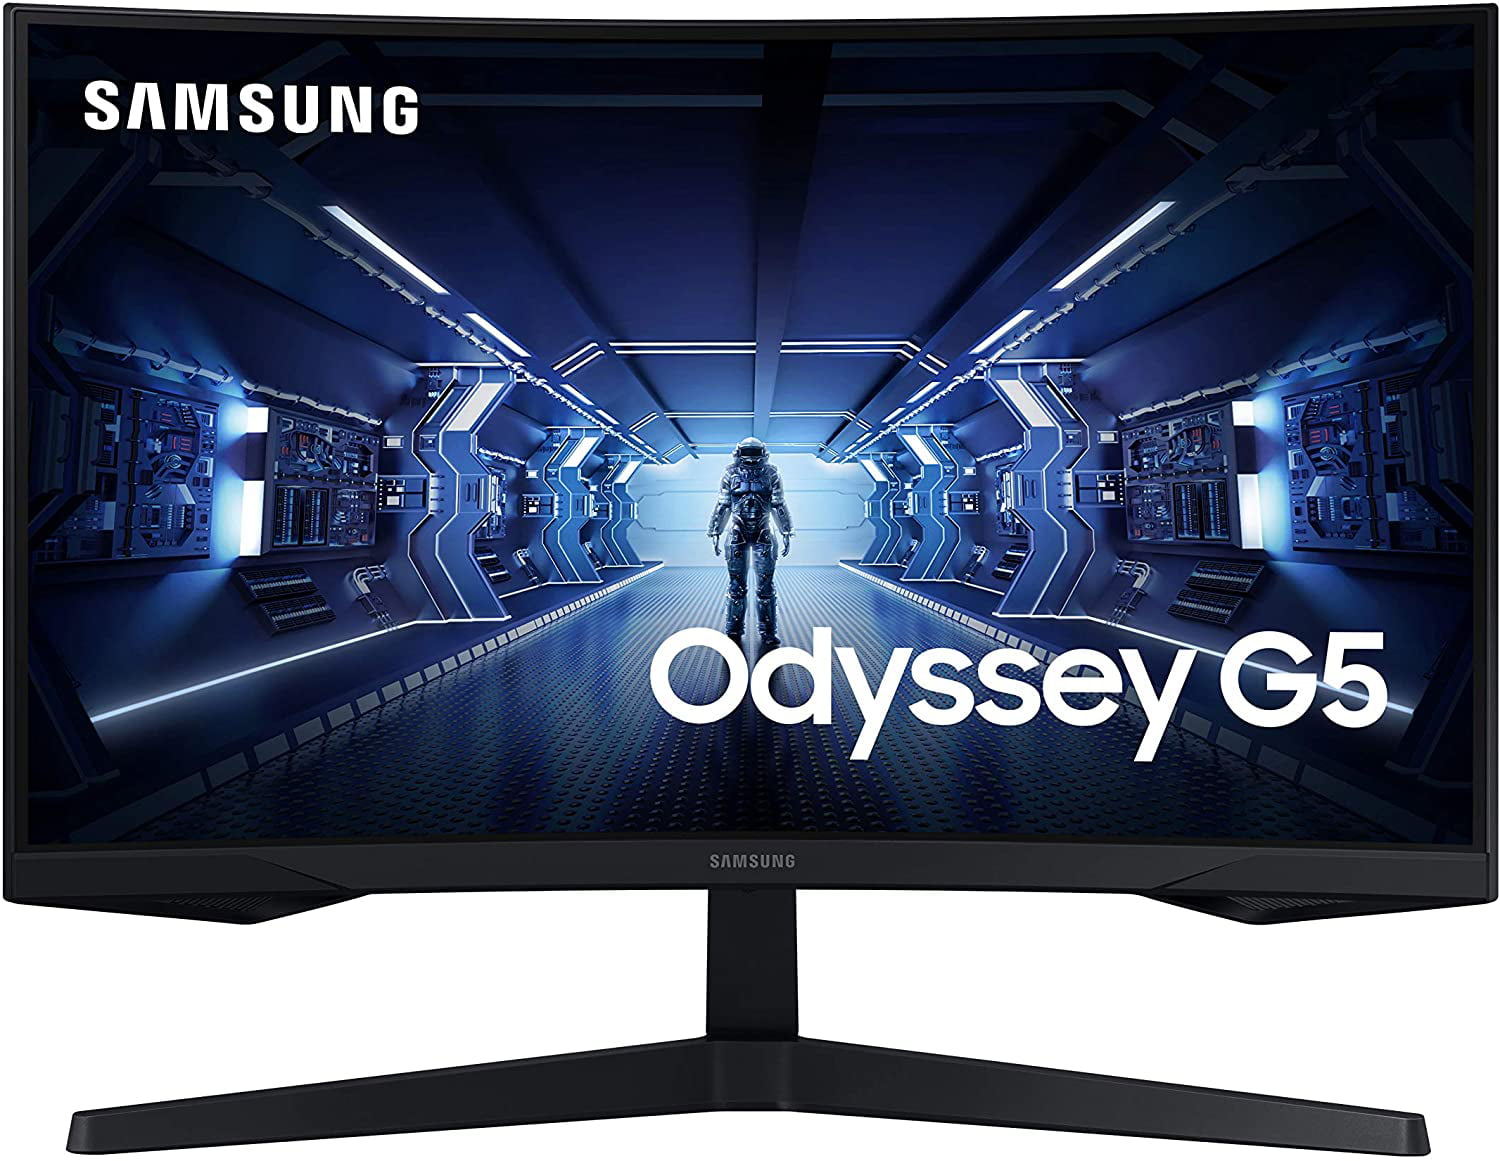 SAMSUNG - G5 - Odyssey, LC27G55TQWNXZA, C27G55T 27 WQHD 2560 x 1440 (2K)  1ms GTG 144Hz HDMI, DisplayPort AMD FreeSync Premium 1000R Curved Gaming  Monitor 